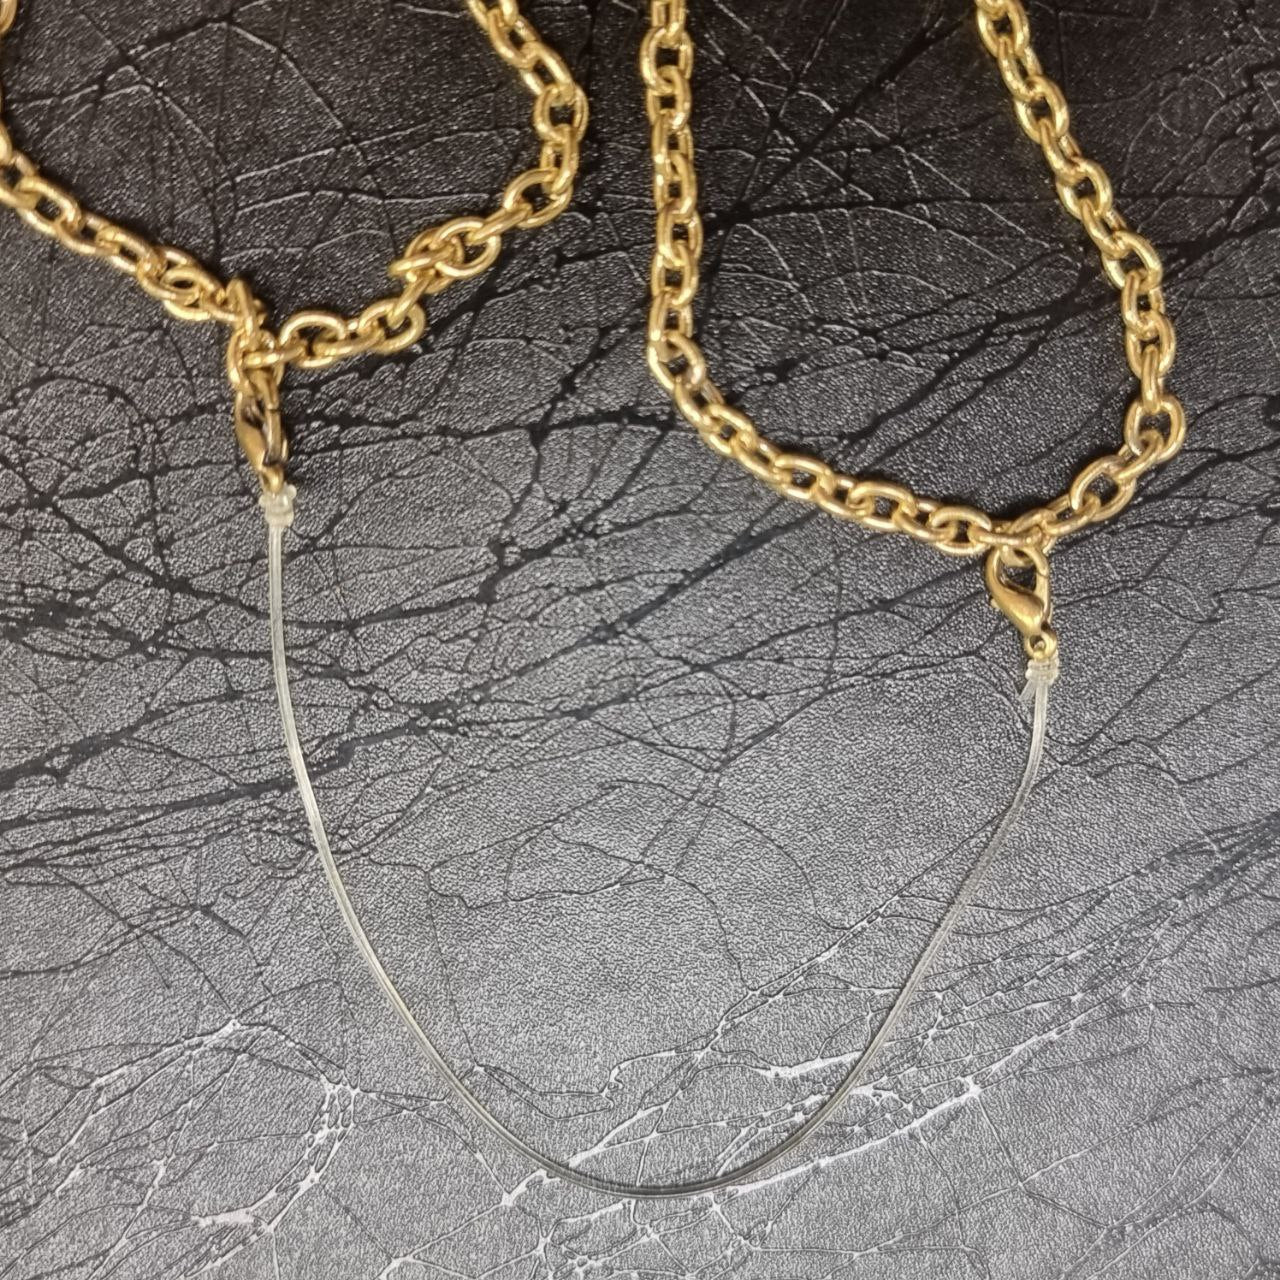 Nagapooshani headpiece necklace